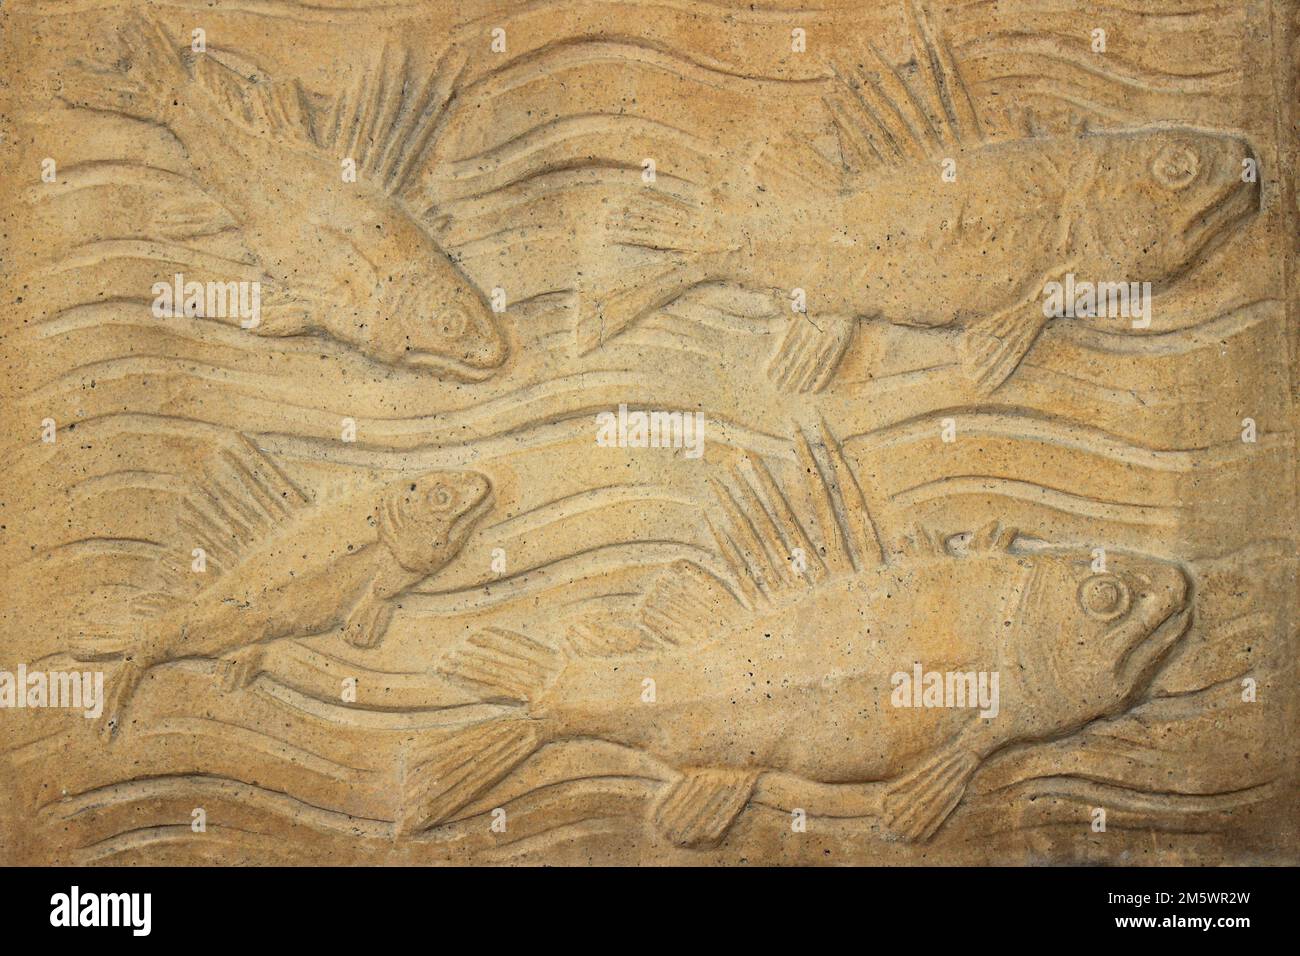 Poissons fossilisés de sculpture en pierre - Musée d'histoire naturelle de Londres Banque D'Images